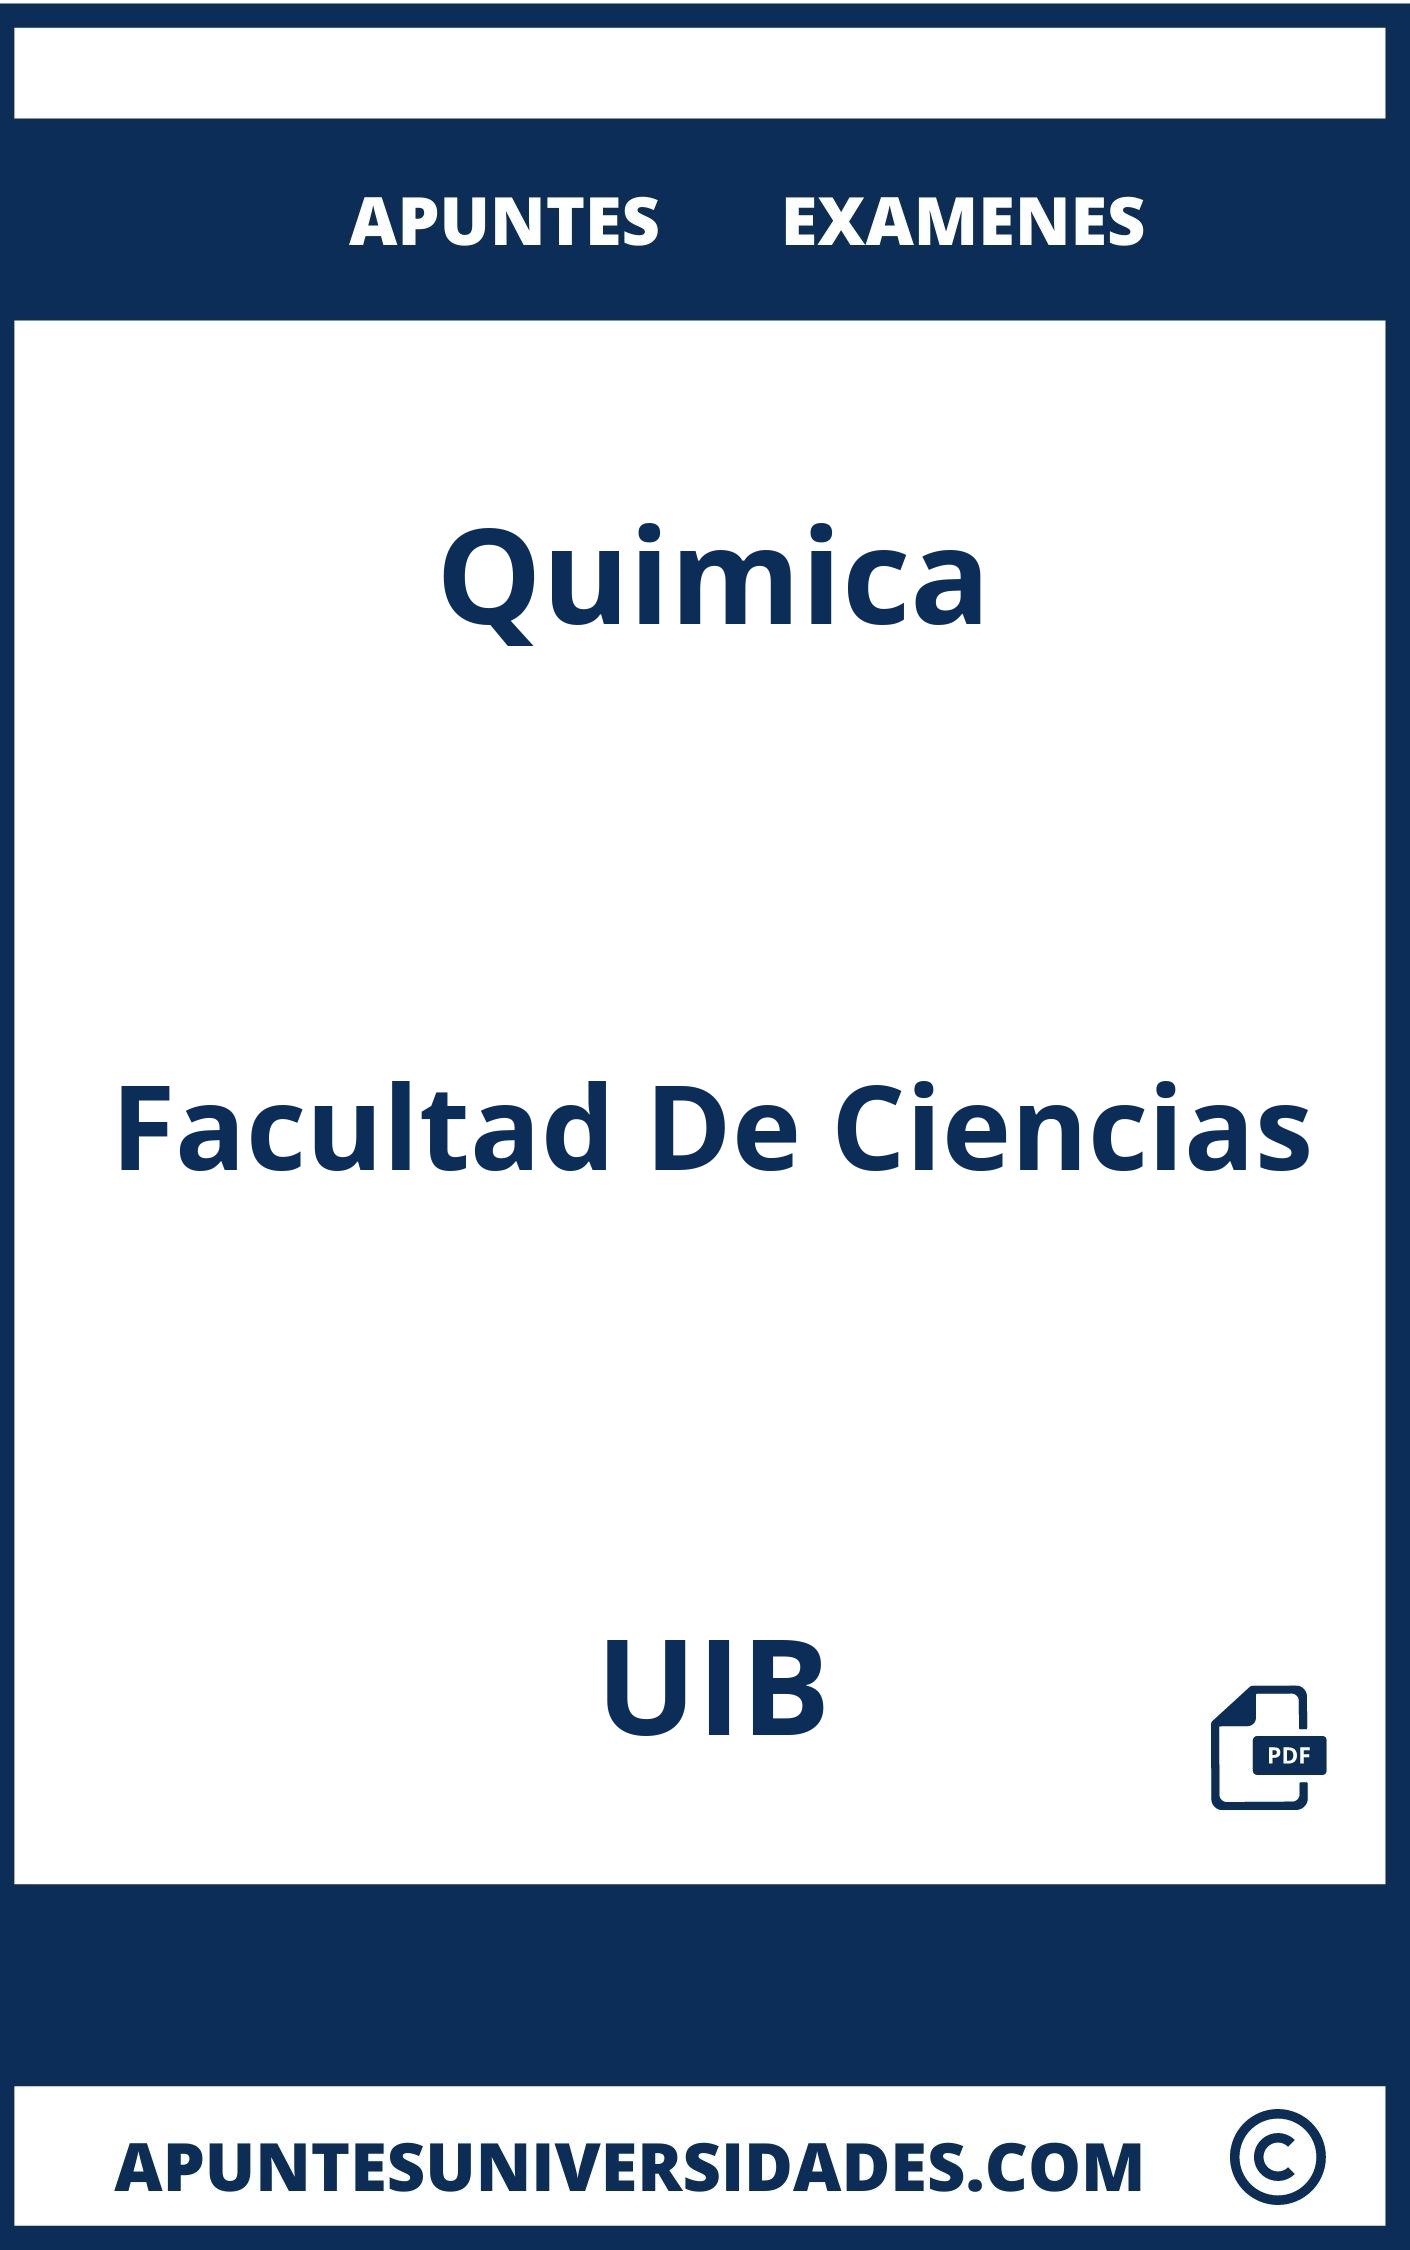 Apuntes Quimica UIB y Examenes